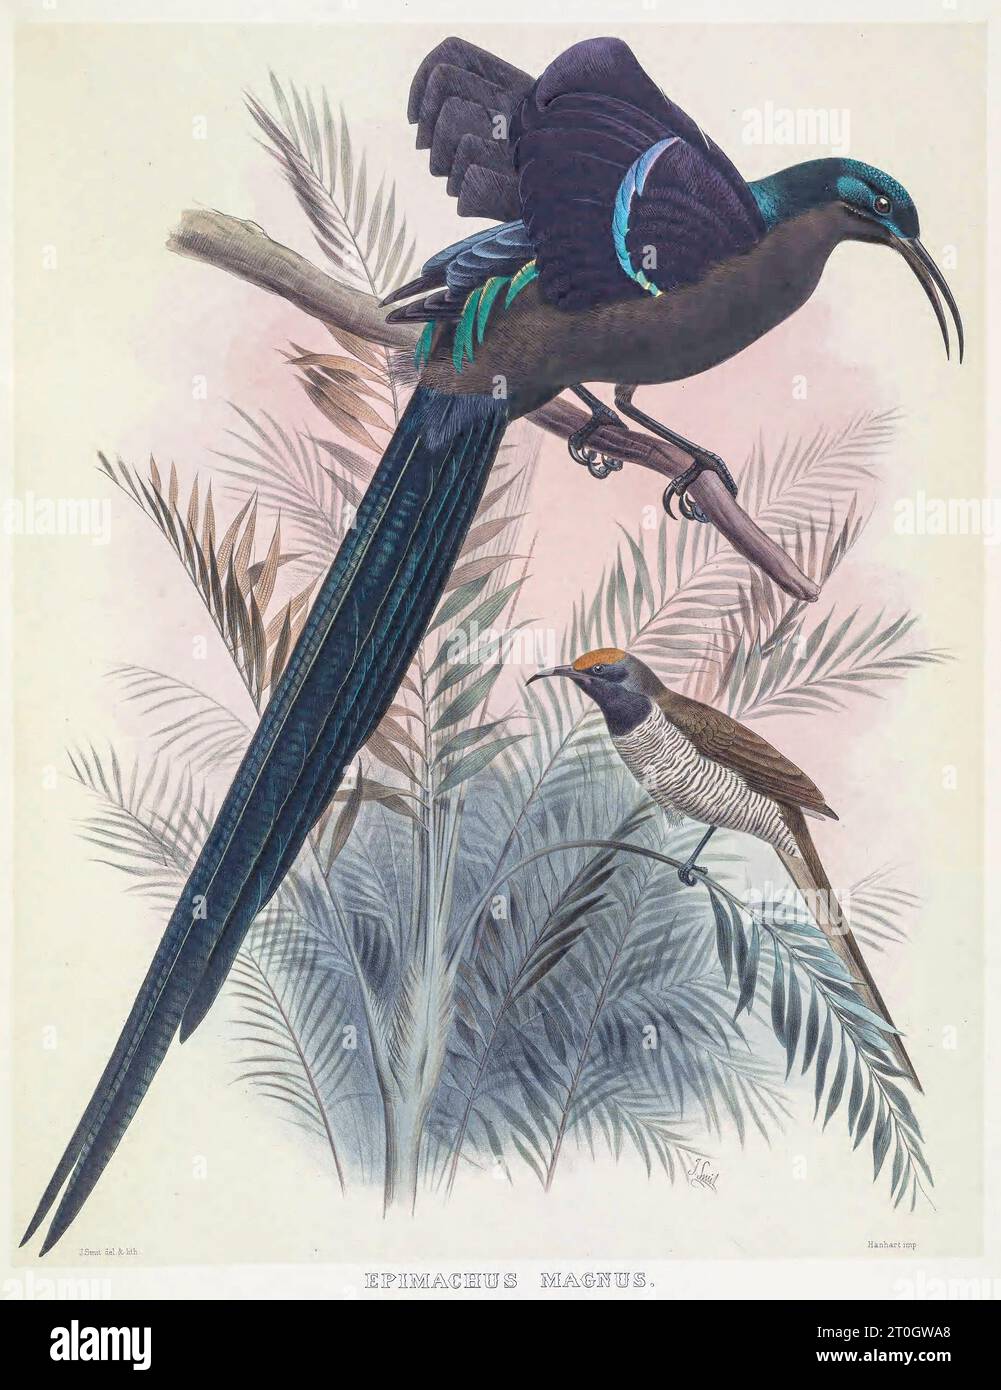 Magnifique oiseau de paradis, illustration du 19e siècle Banque D'Images